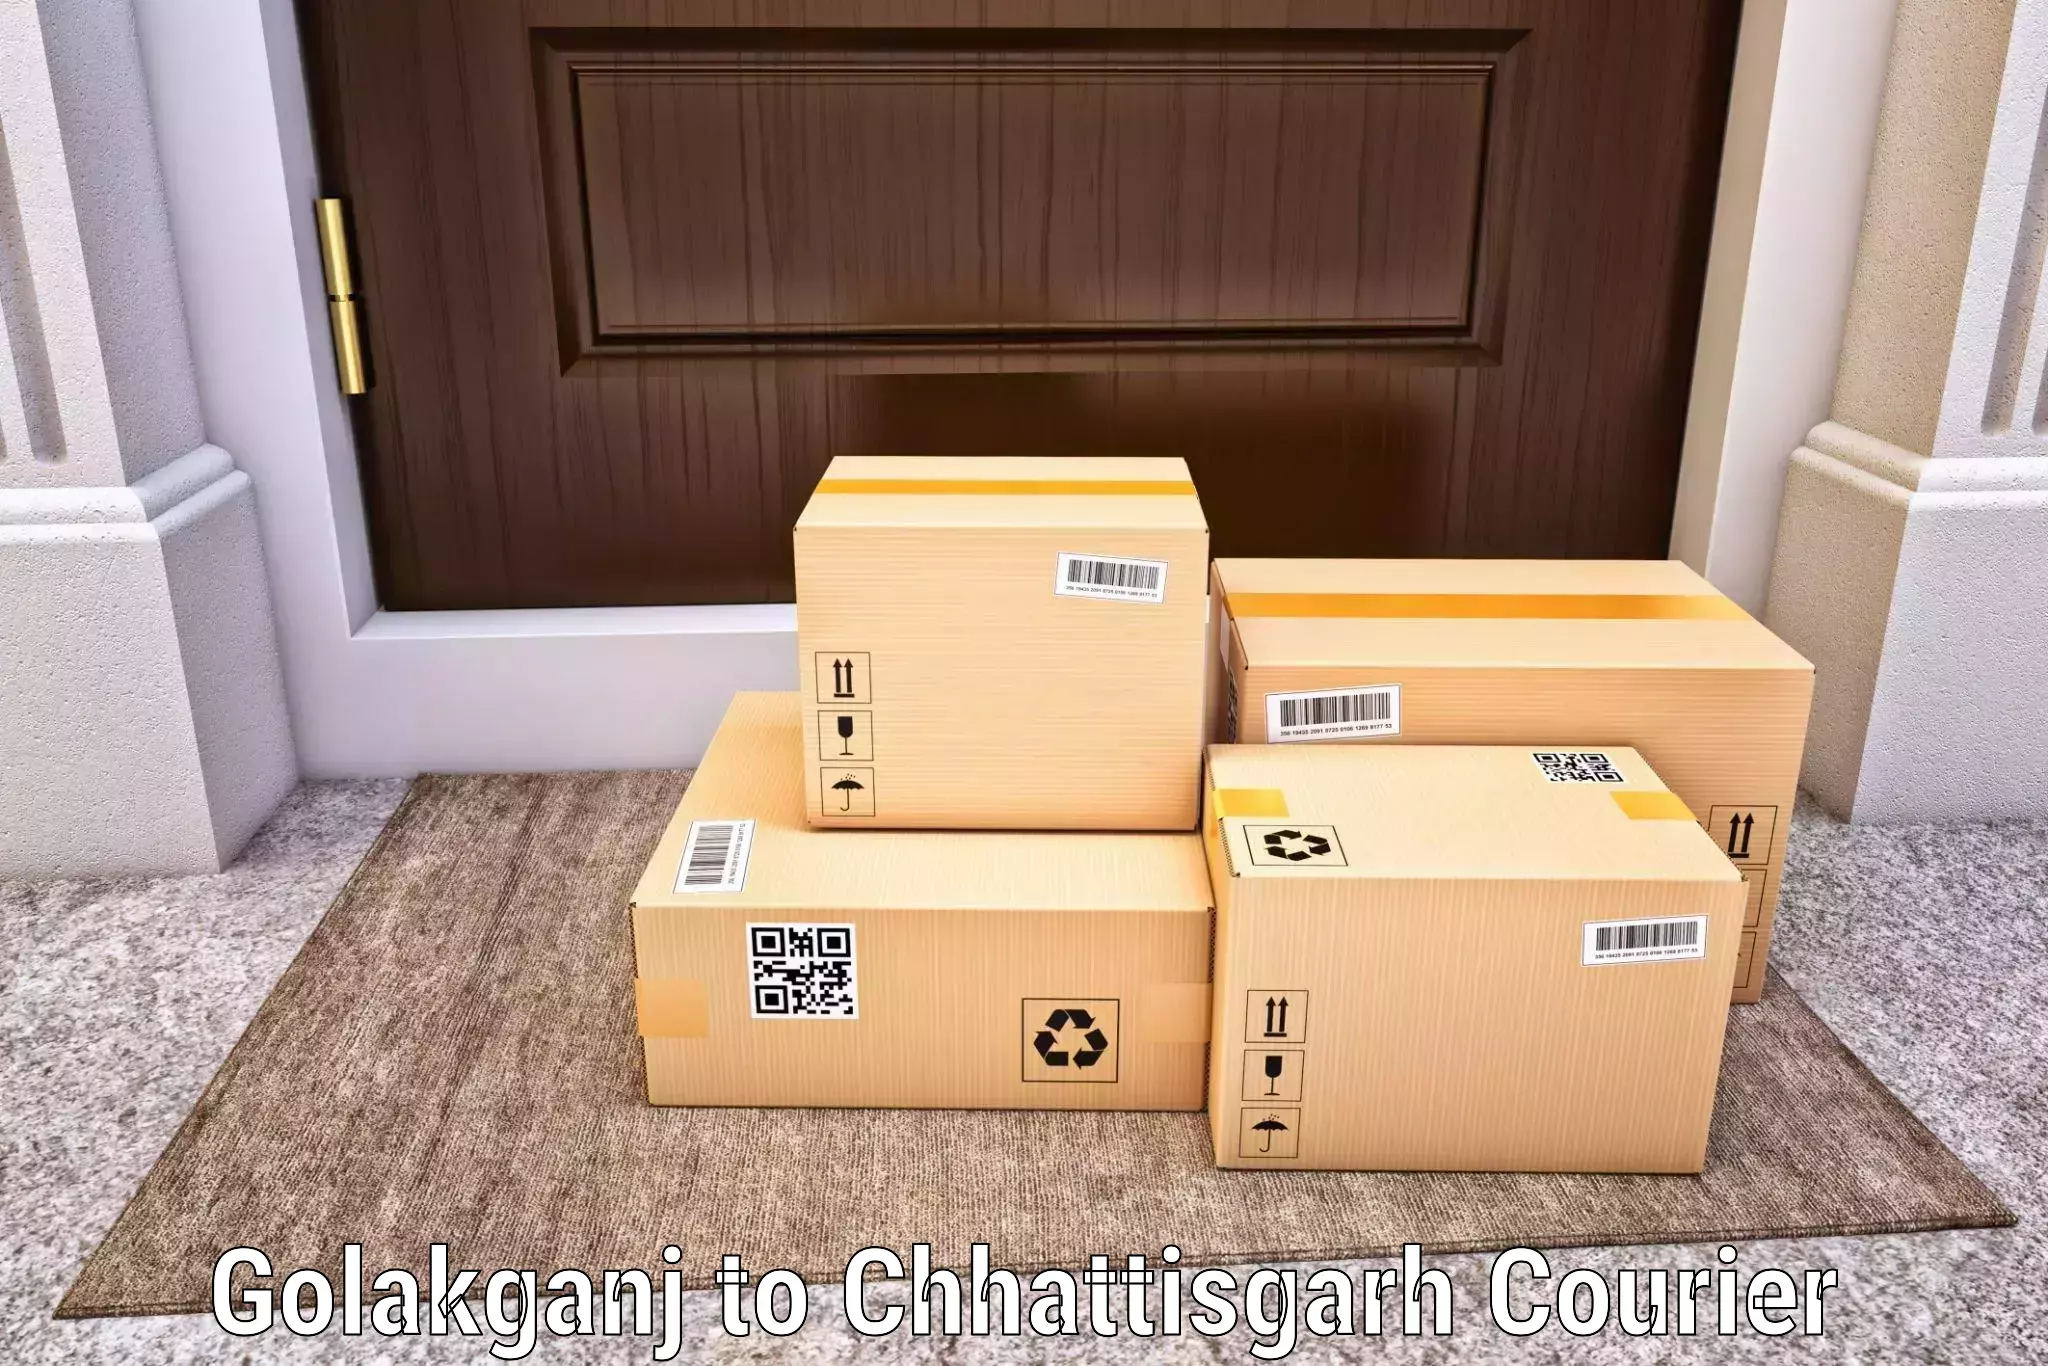 Flexible delivery schedules Golakganj to Dantewada